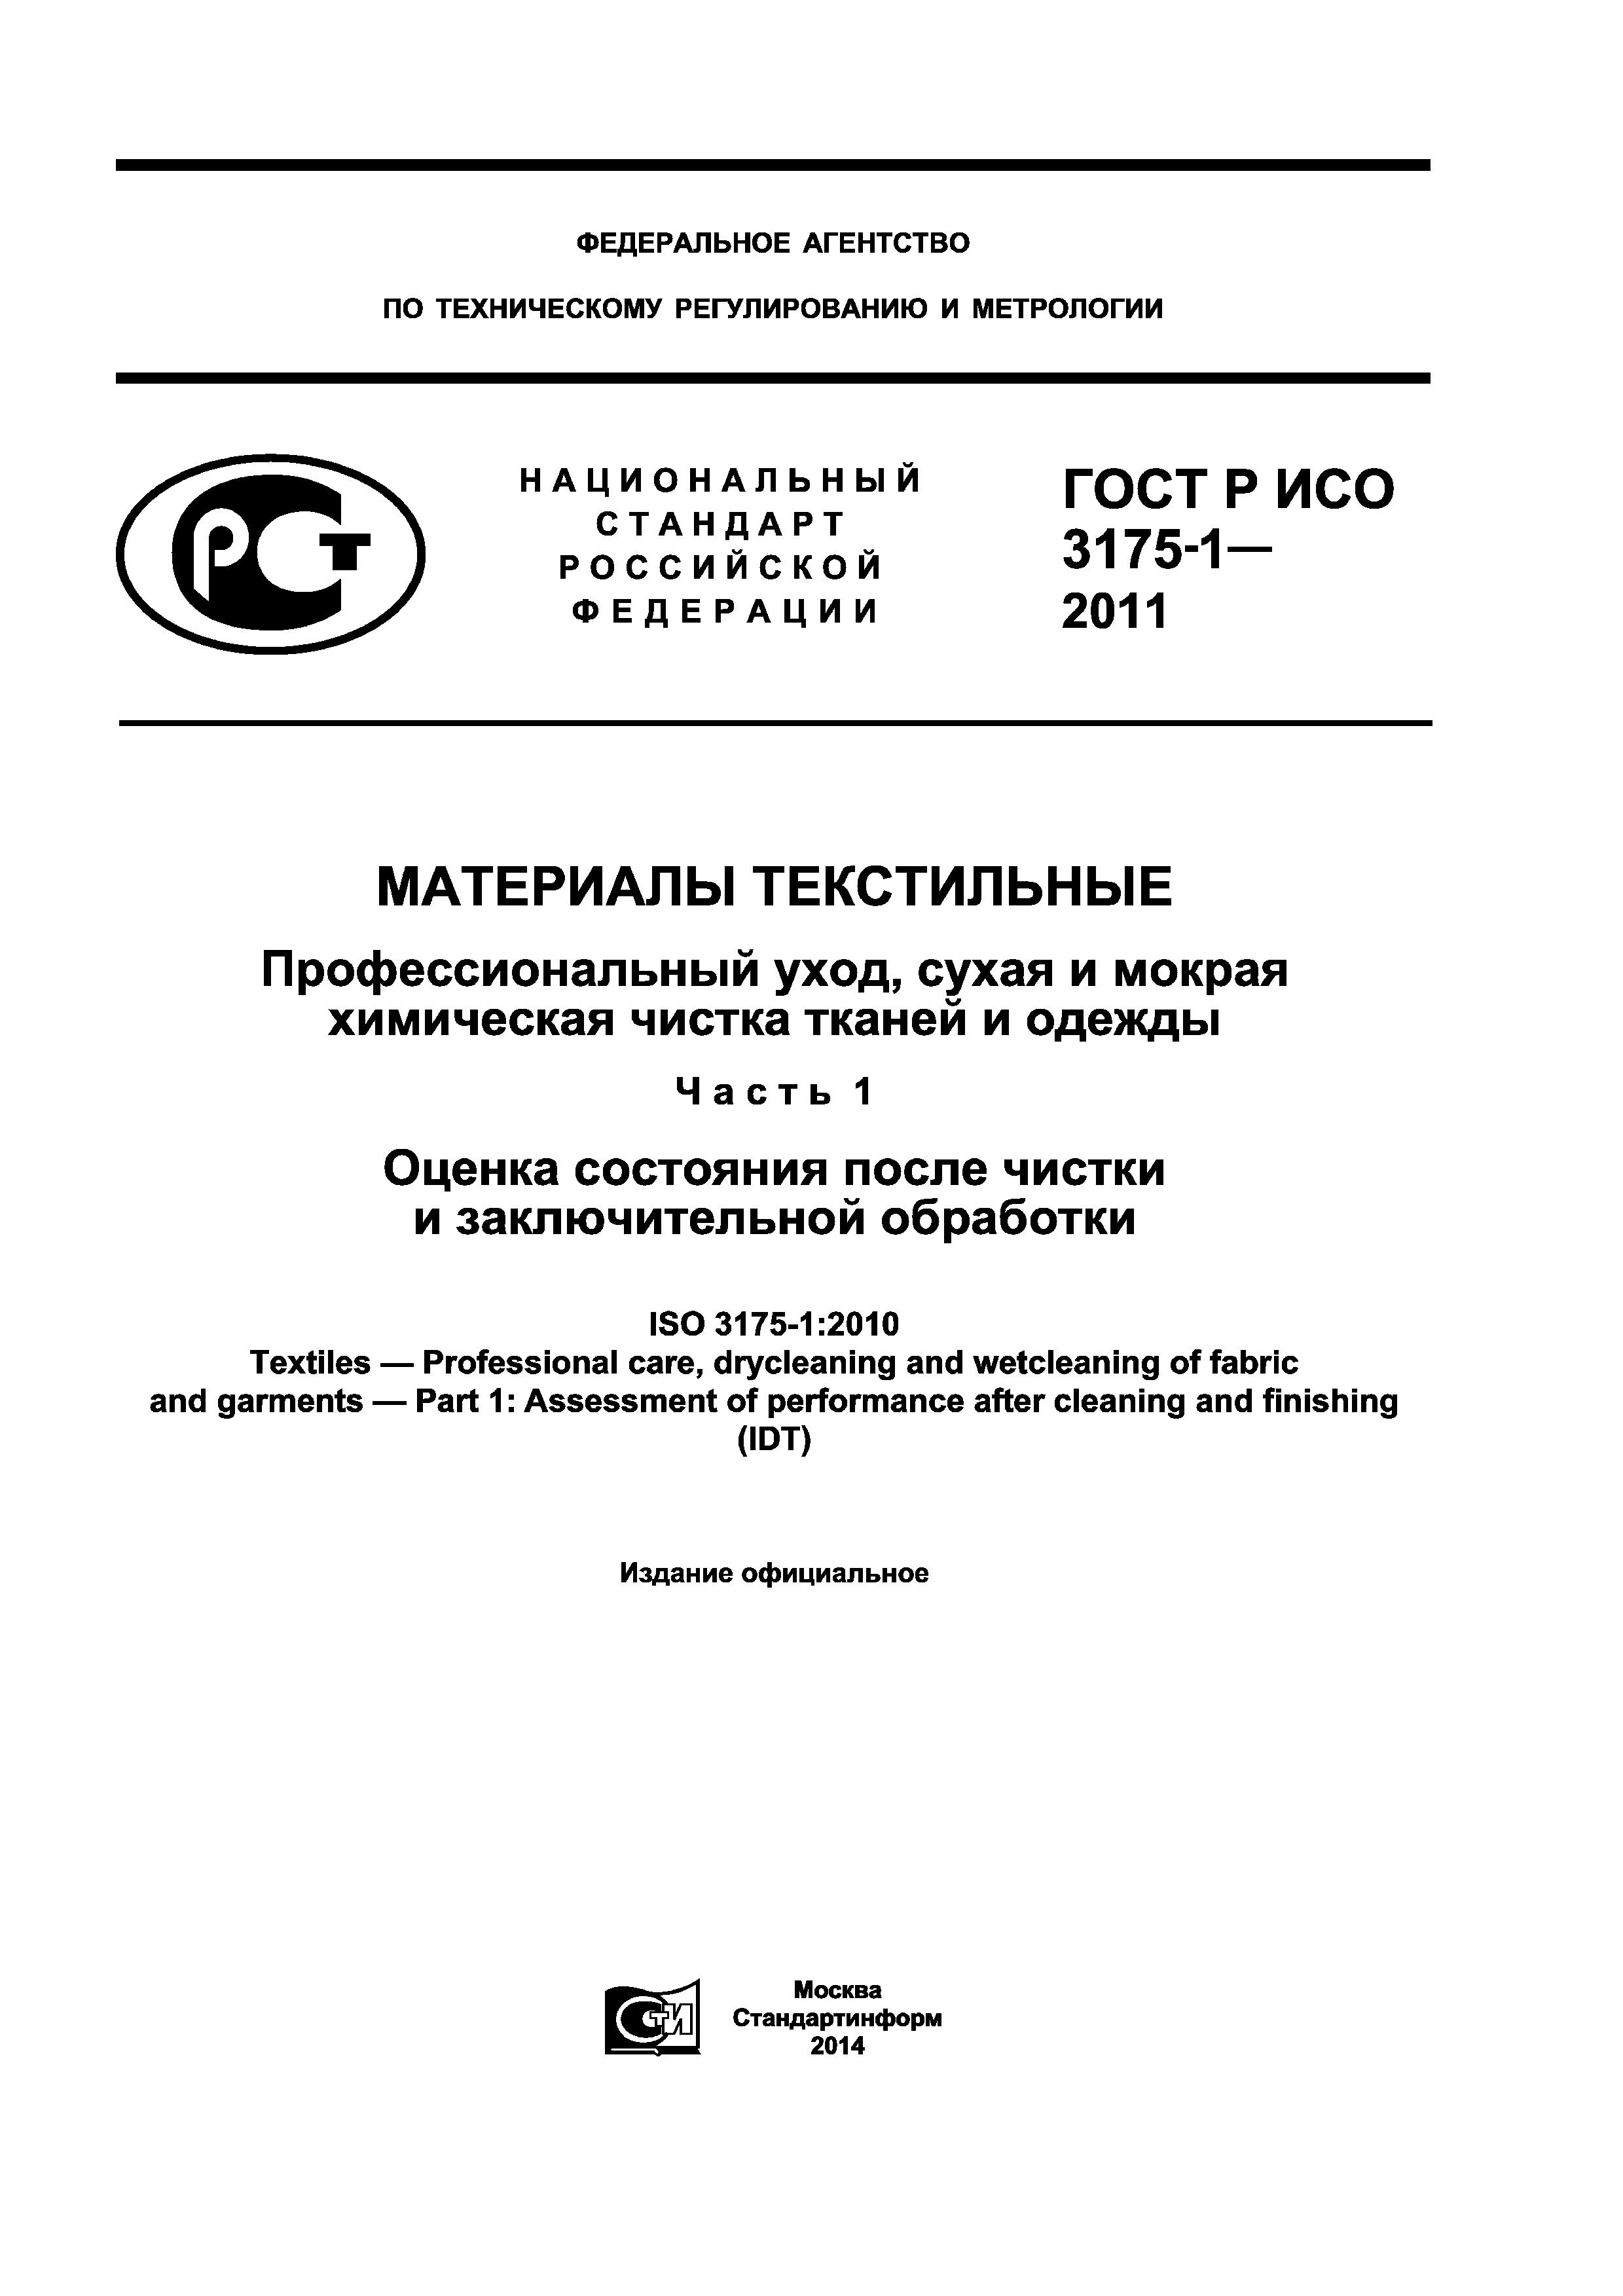 ГОСТ Р ИСО 3175-1-2011